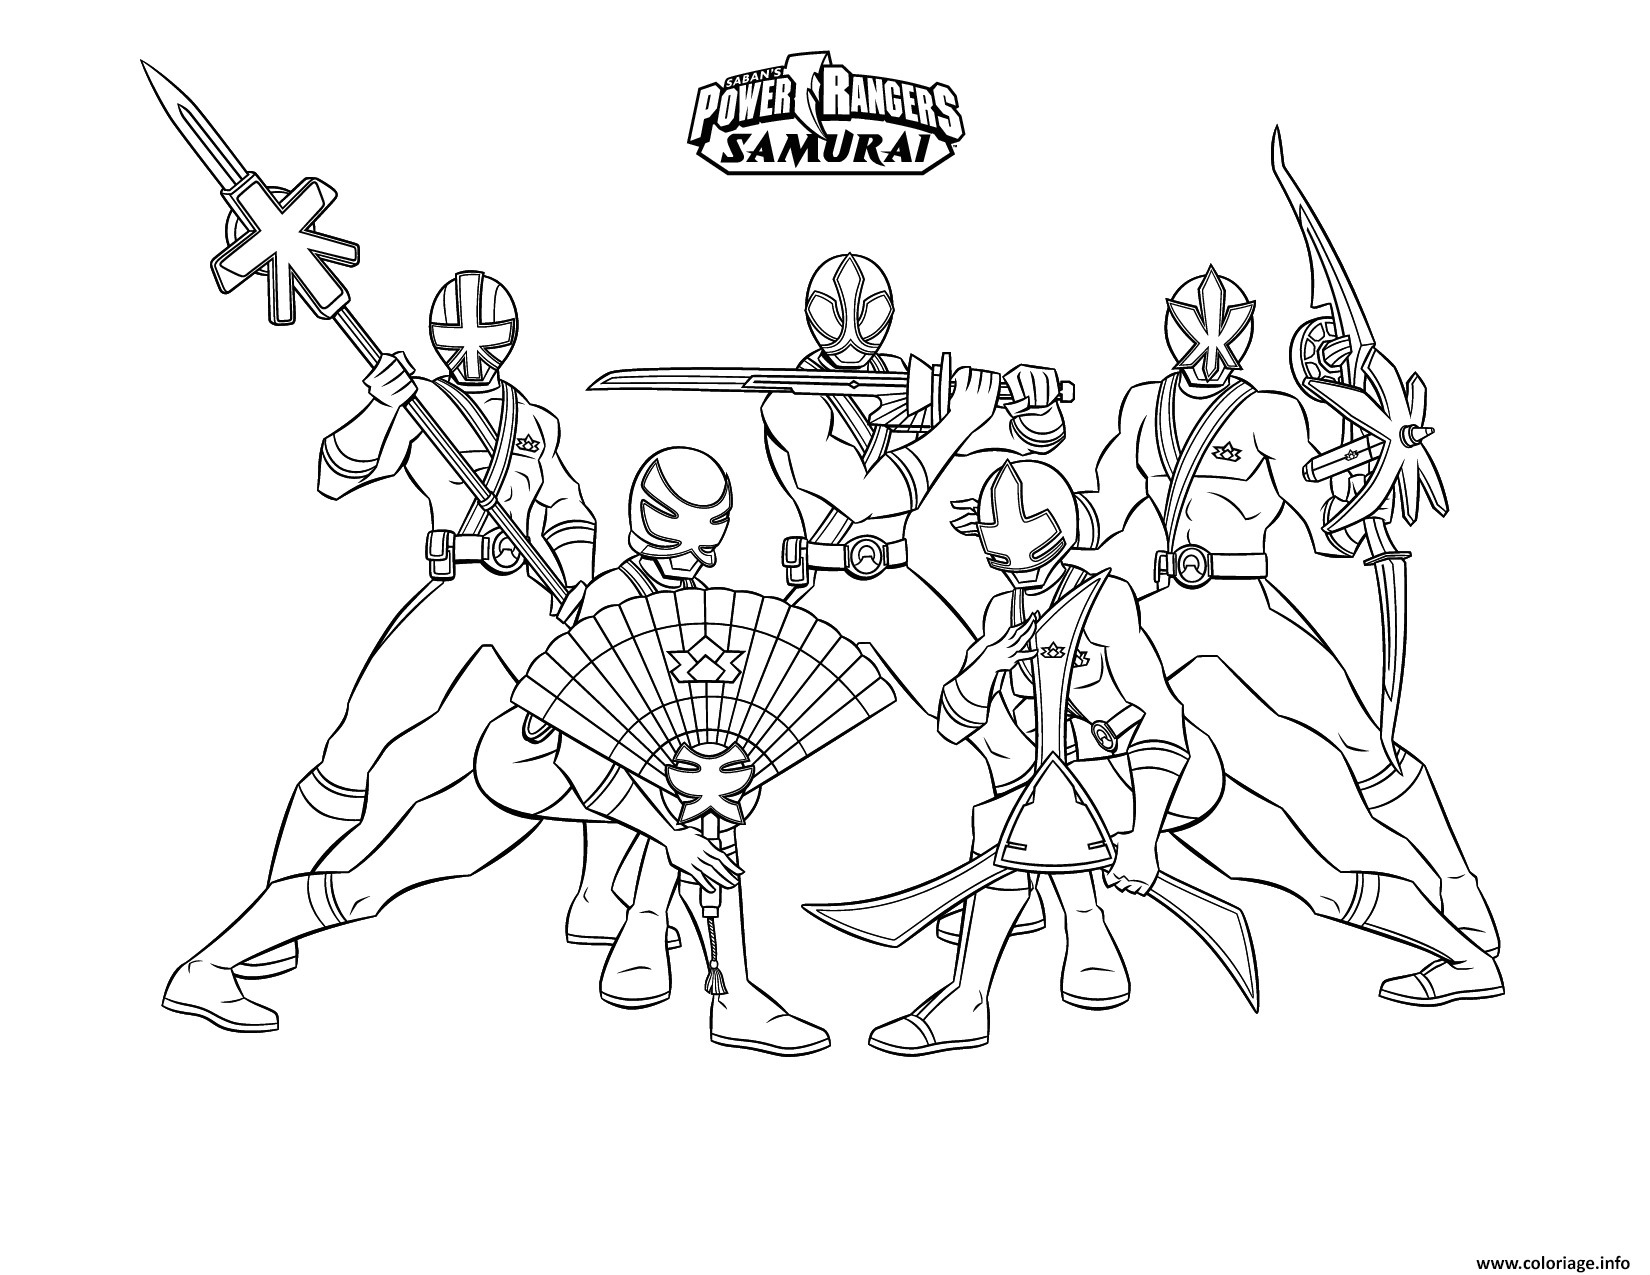 Coloriage Samurai Power Rangers Equipe Dessin Imprimer